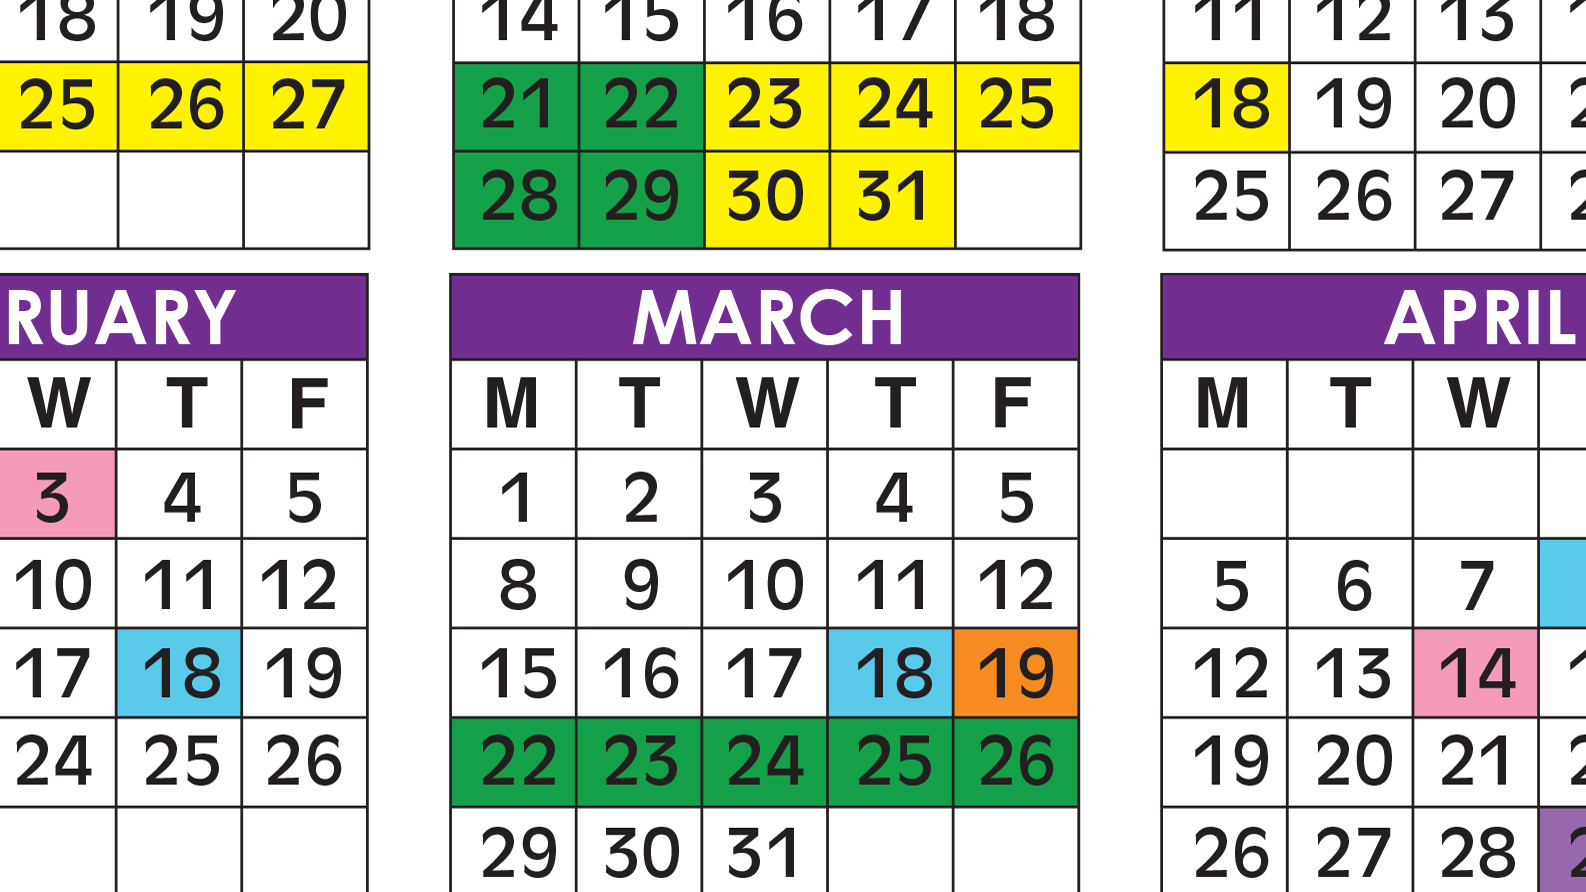 Broward Schools Calendar 2021 | Printable March